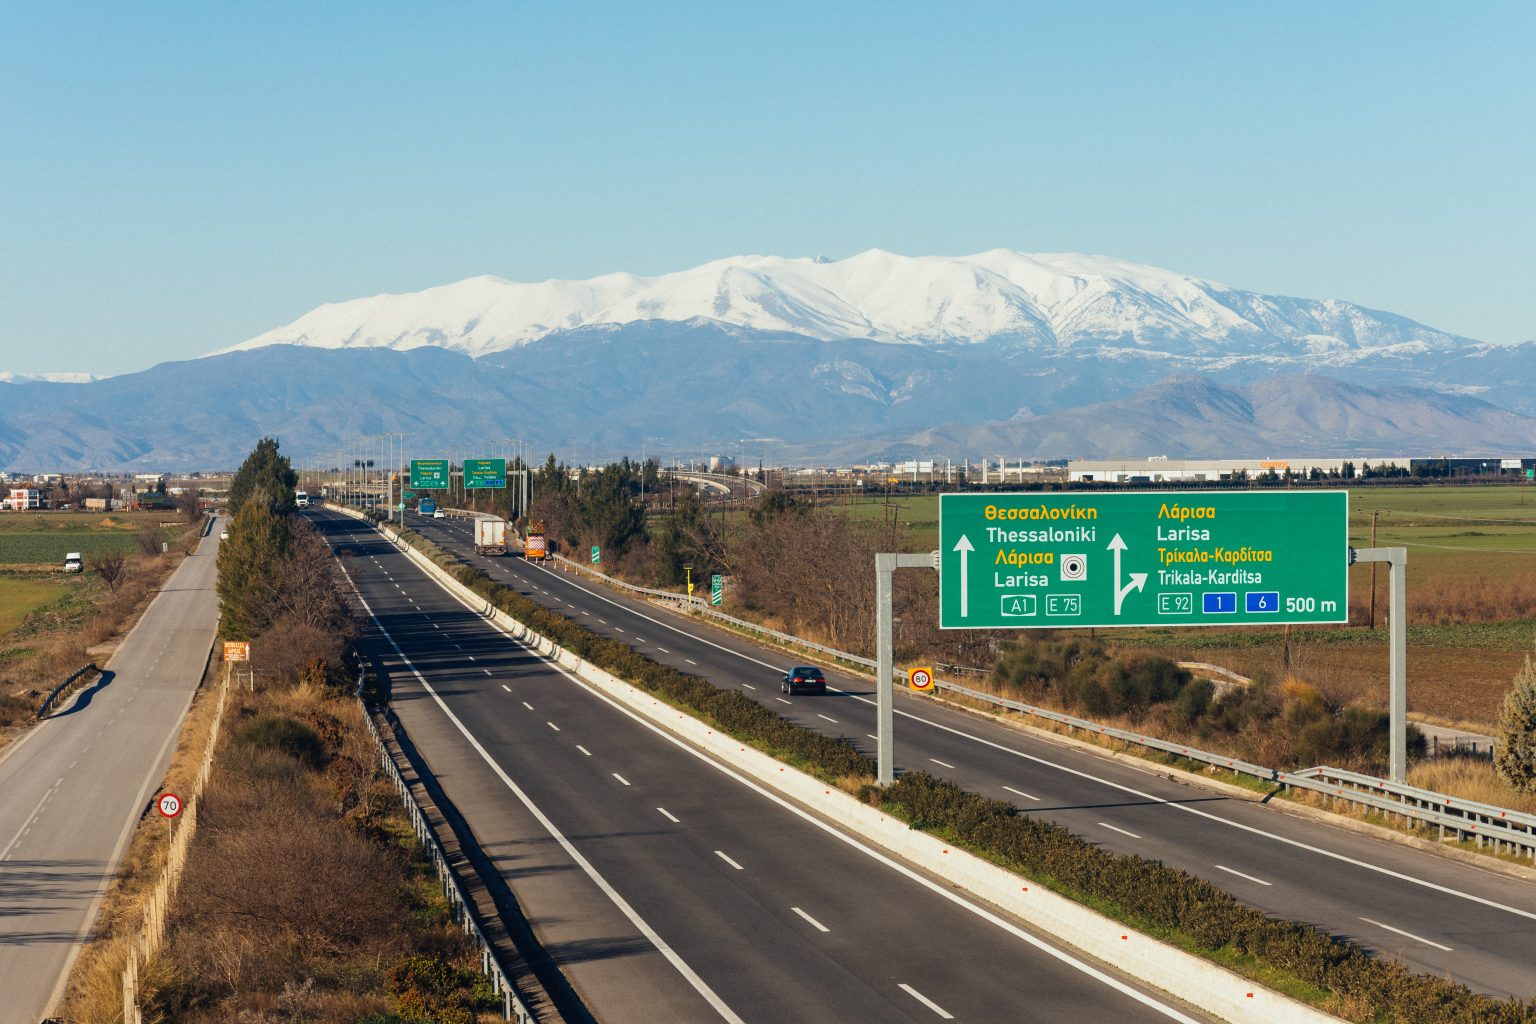 Αυτοκινητόδρομος Αιγαίου: Συνεργασία με ΙΒΜ για το νέο σύστημα διαχείρισης υπηρεσιών του αυτοκινητόδρομου